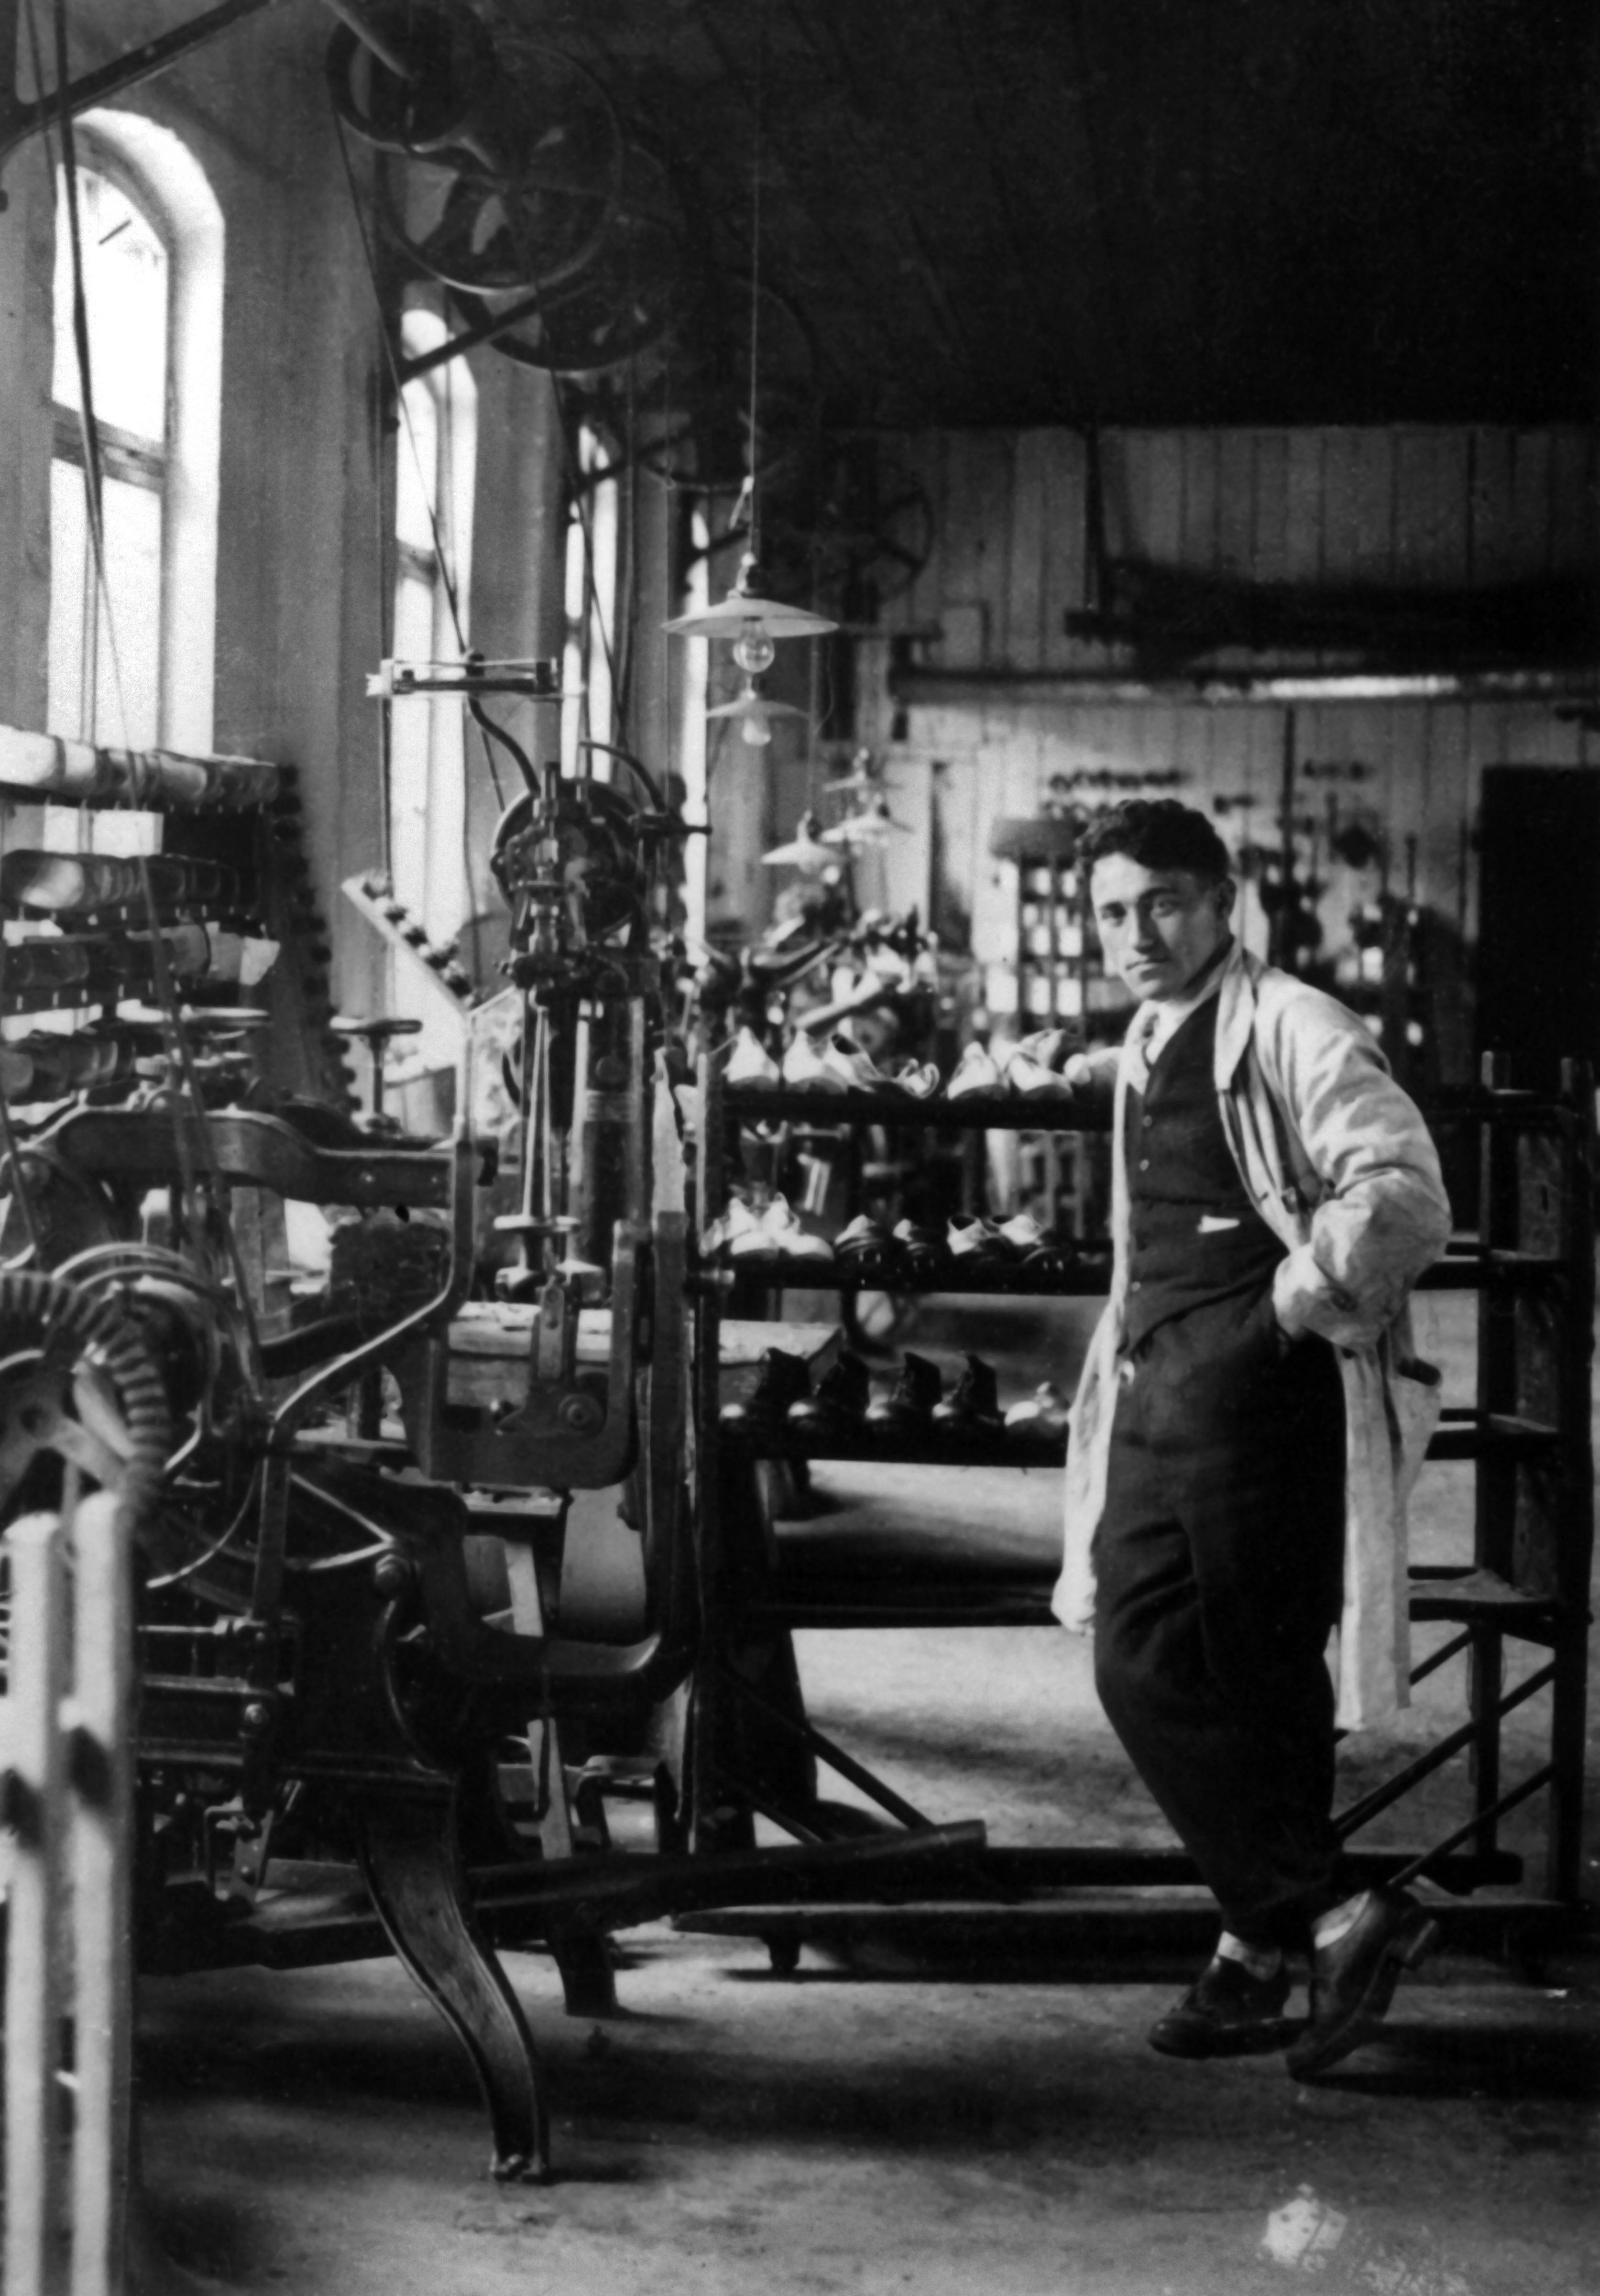 Die ersten Schuh-Experimente sollen in der häuslichen Waschküche stattgefunden haben. 1924 übernehmen die Brüder Dassler die Schuhfabrik ihres Vaters. Das Bild zeigt den jüngeren Bruder Adolf Dassler in der Werkstatt.